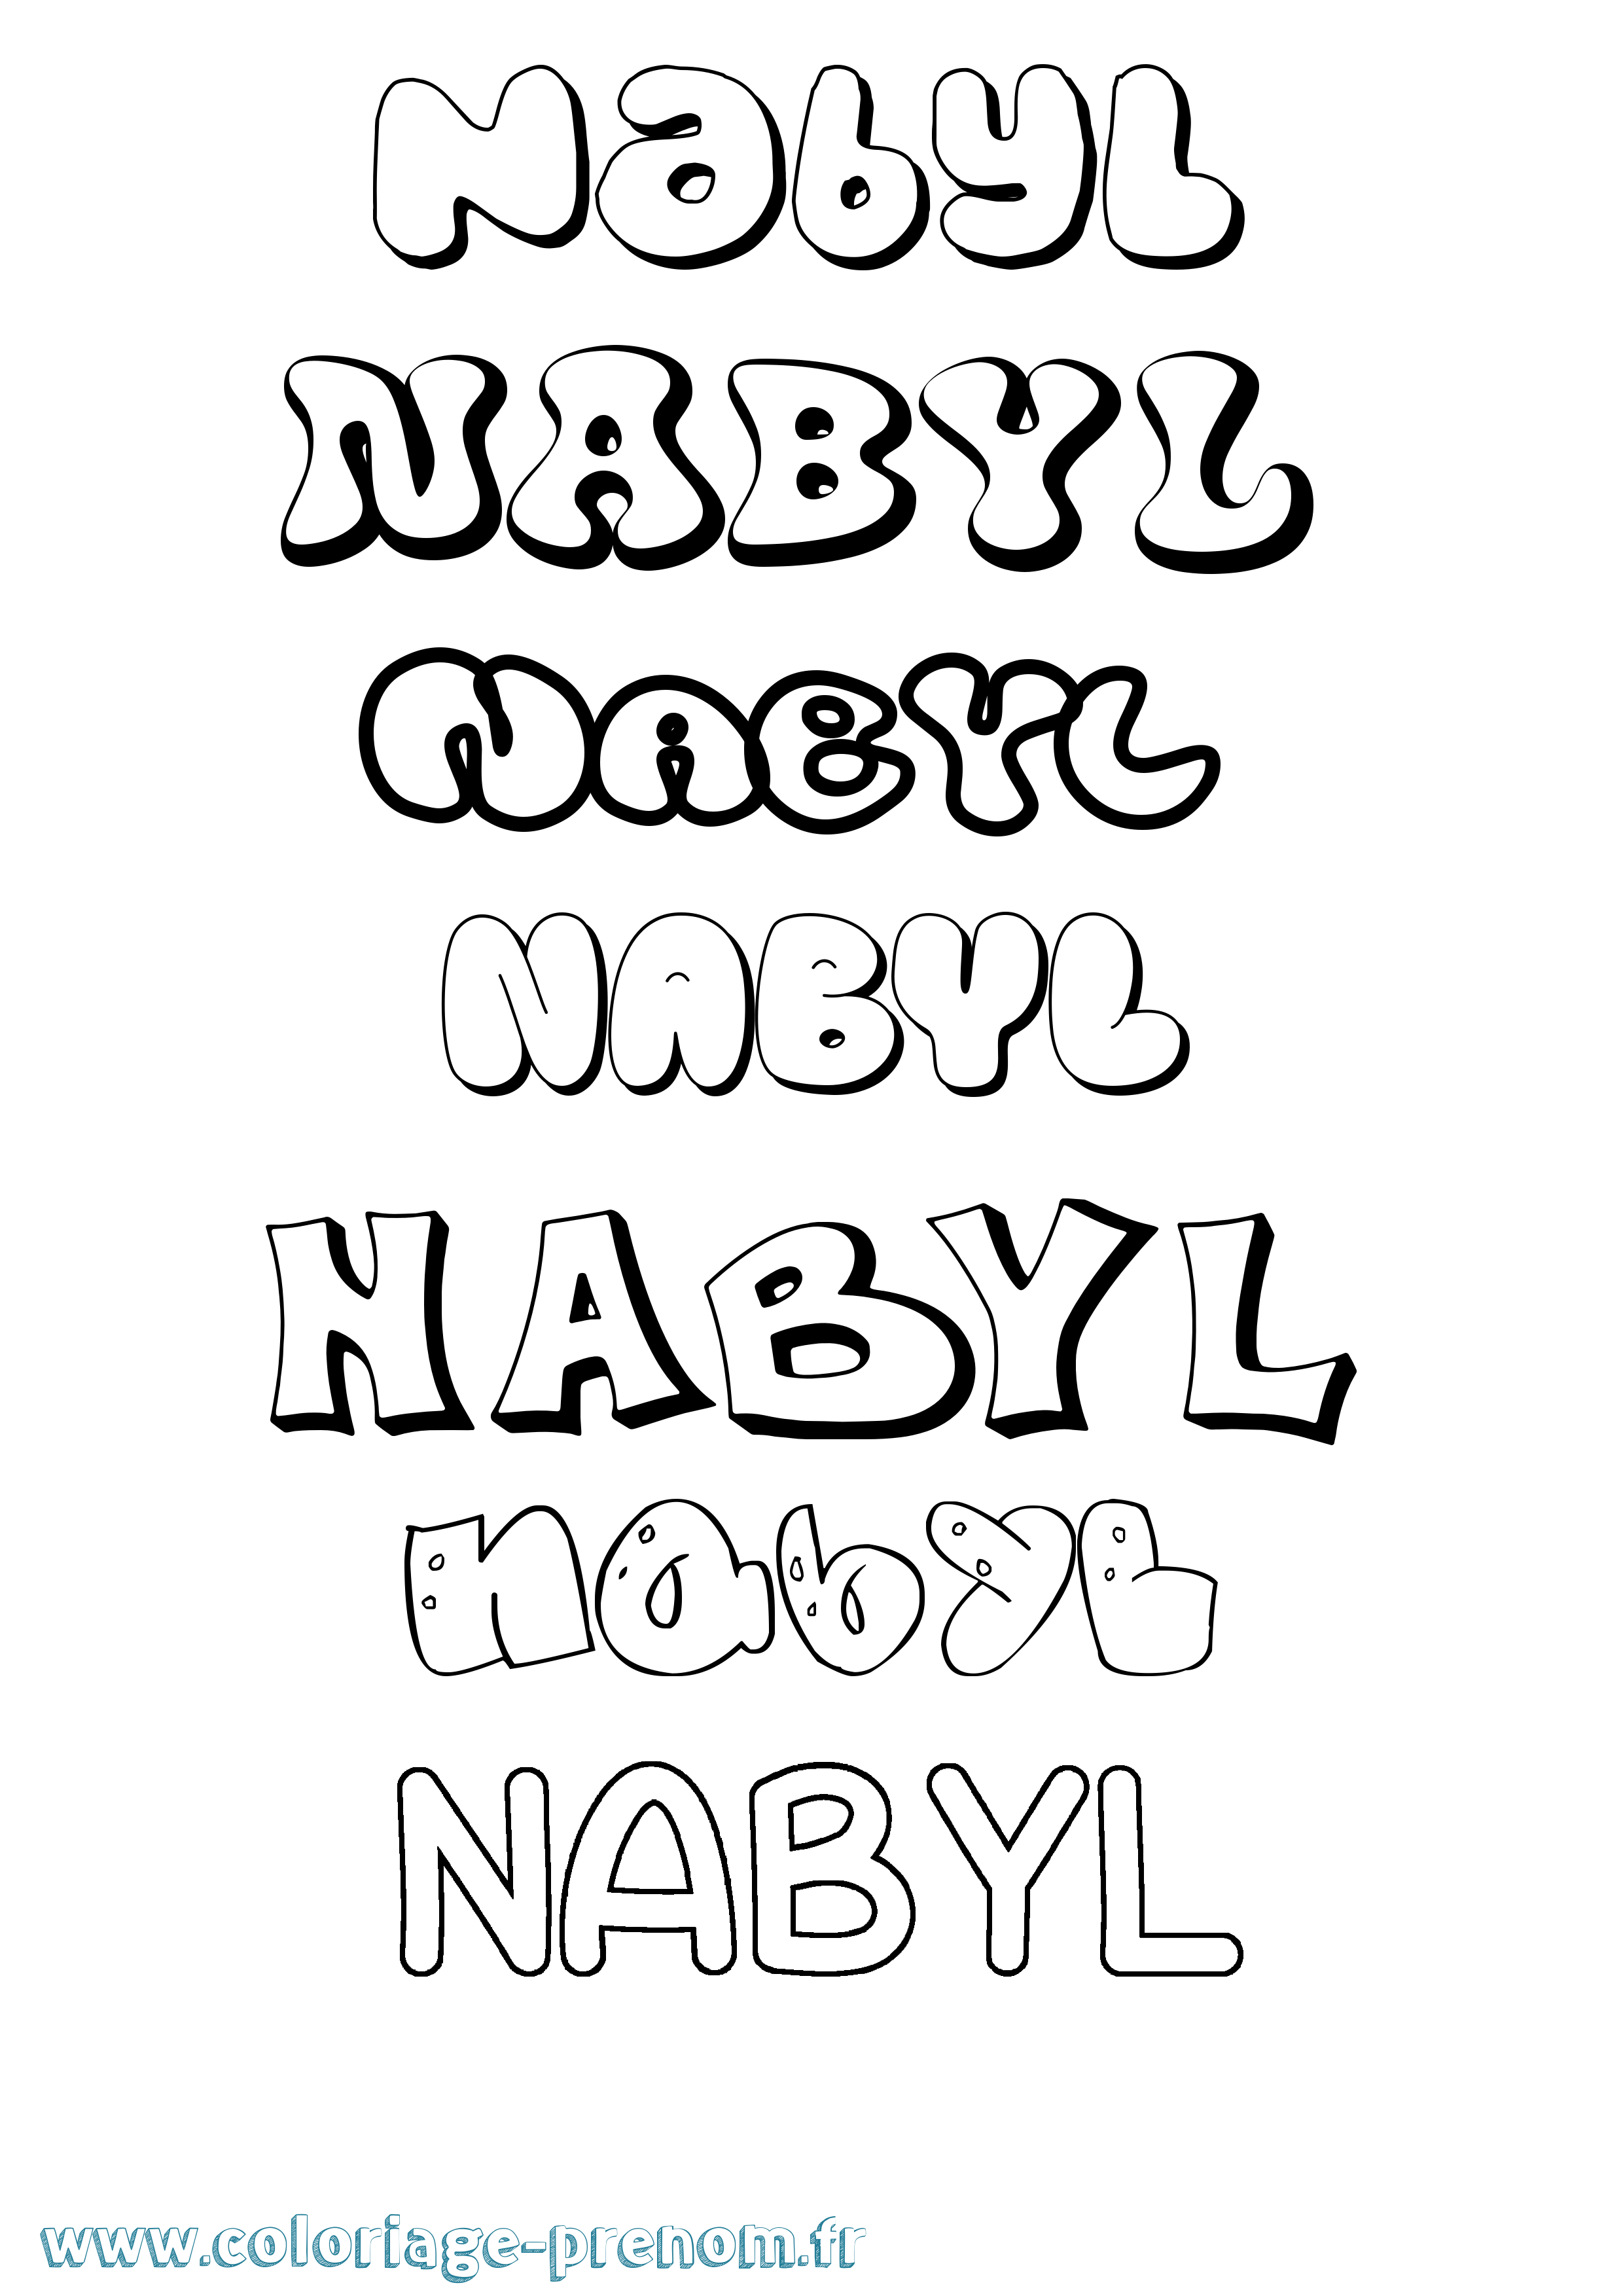 Coloriage prénom Nabyl Bubble